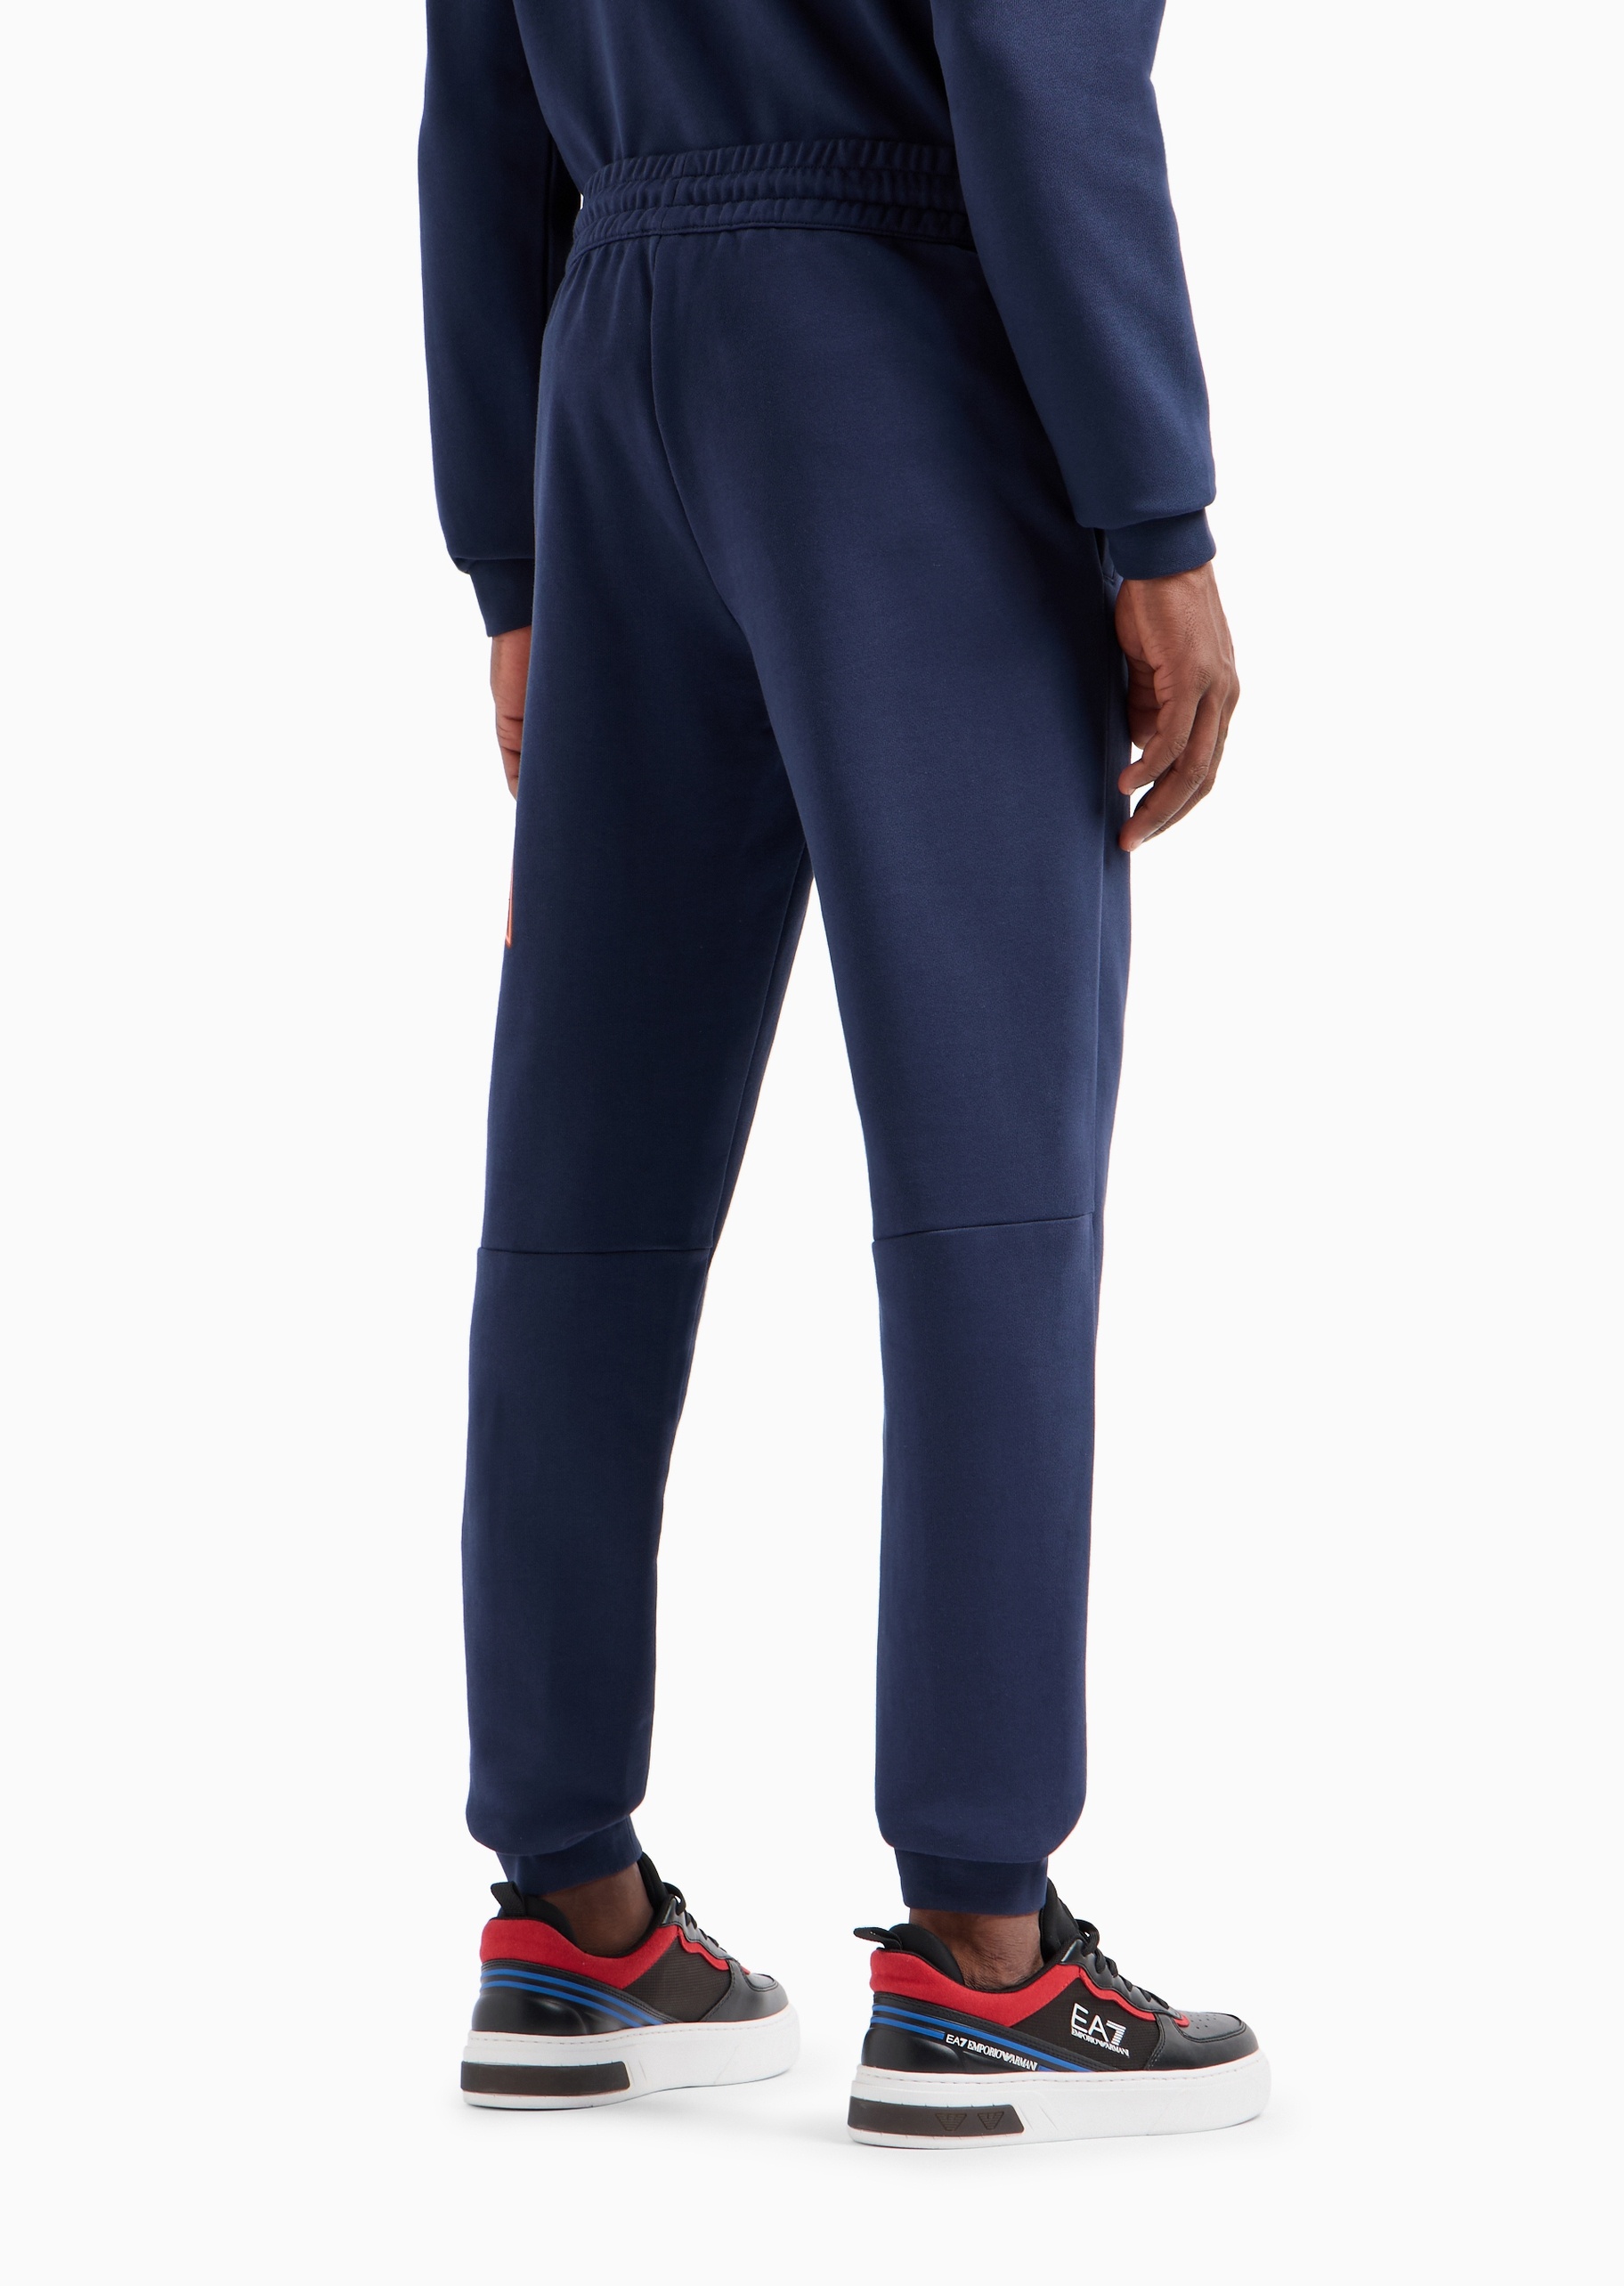 EA7 男士全棉合身系带腰长款直筒束脚健身卫裤